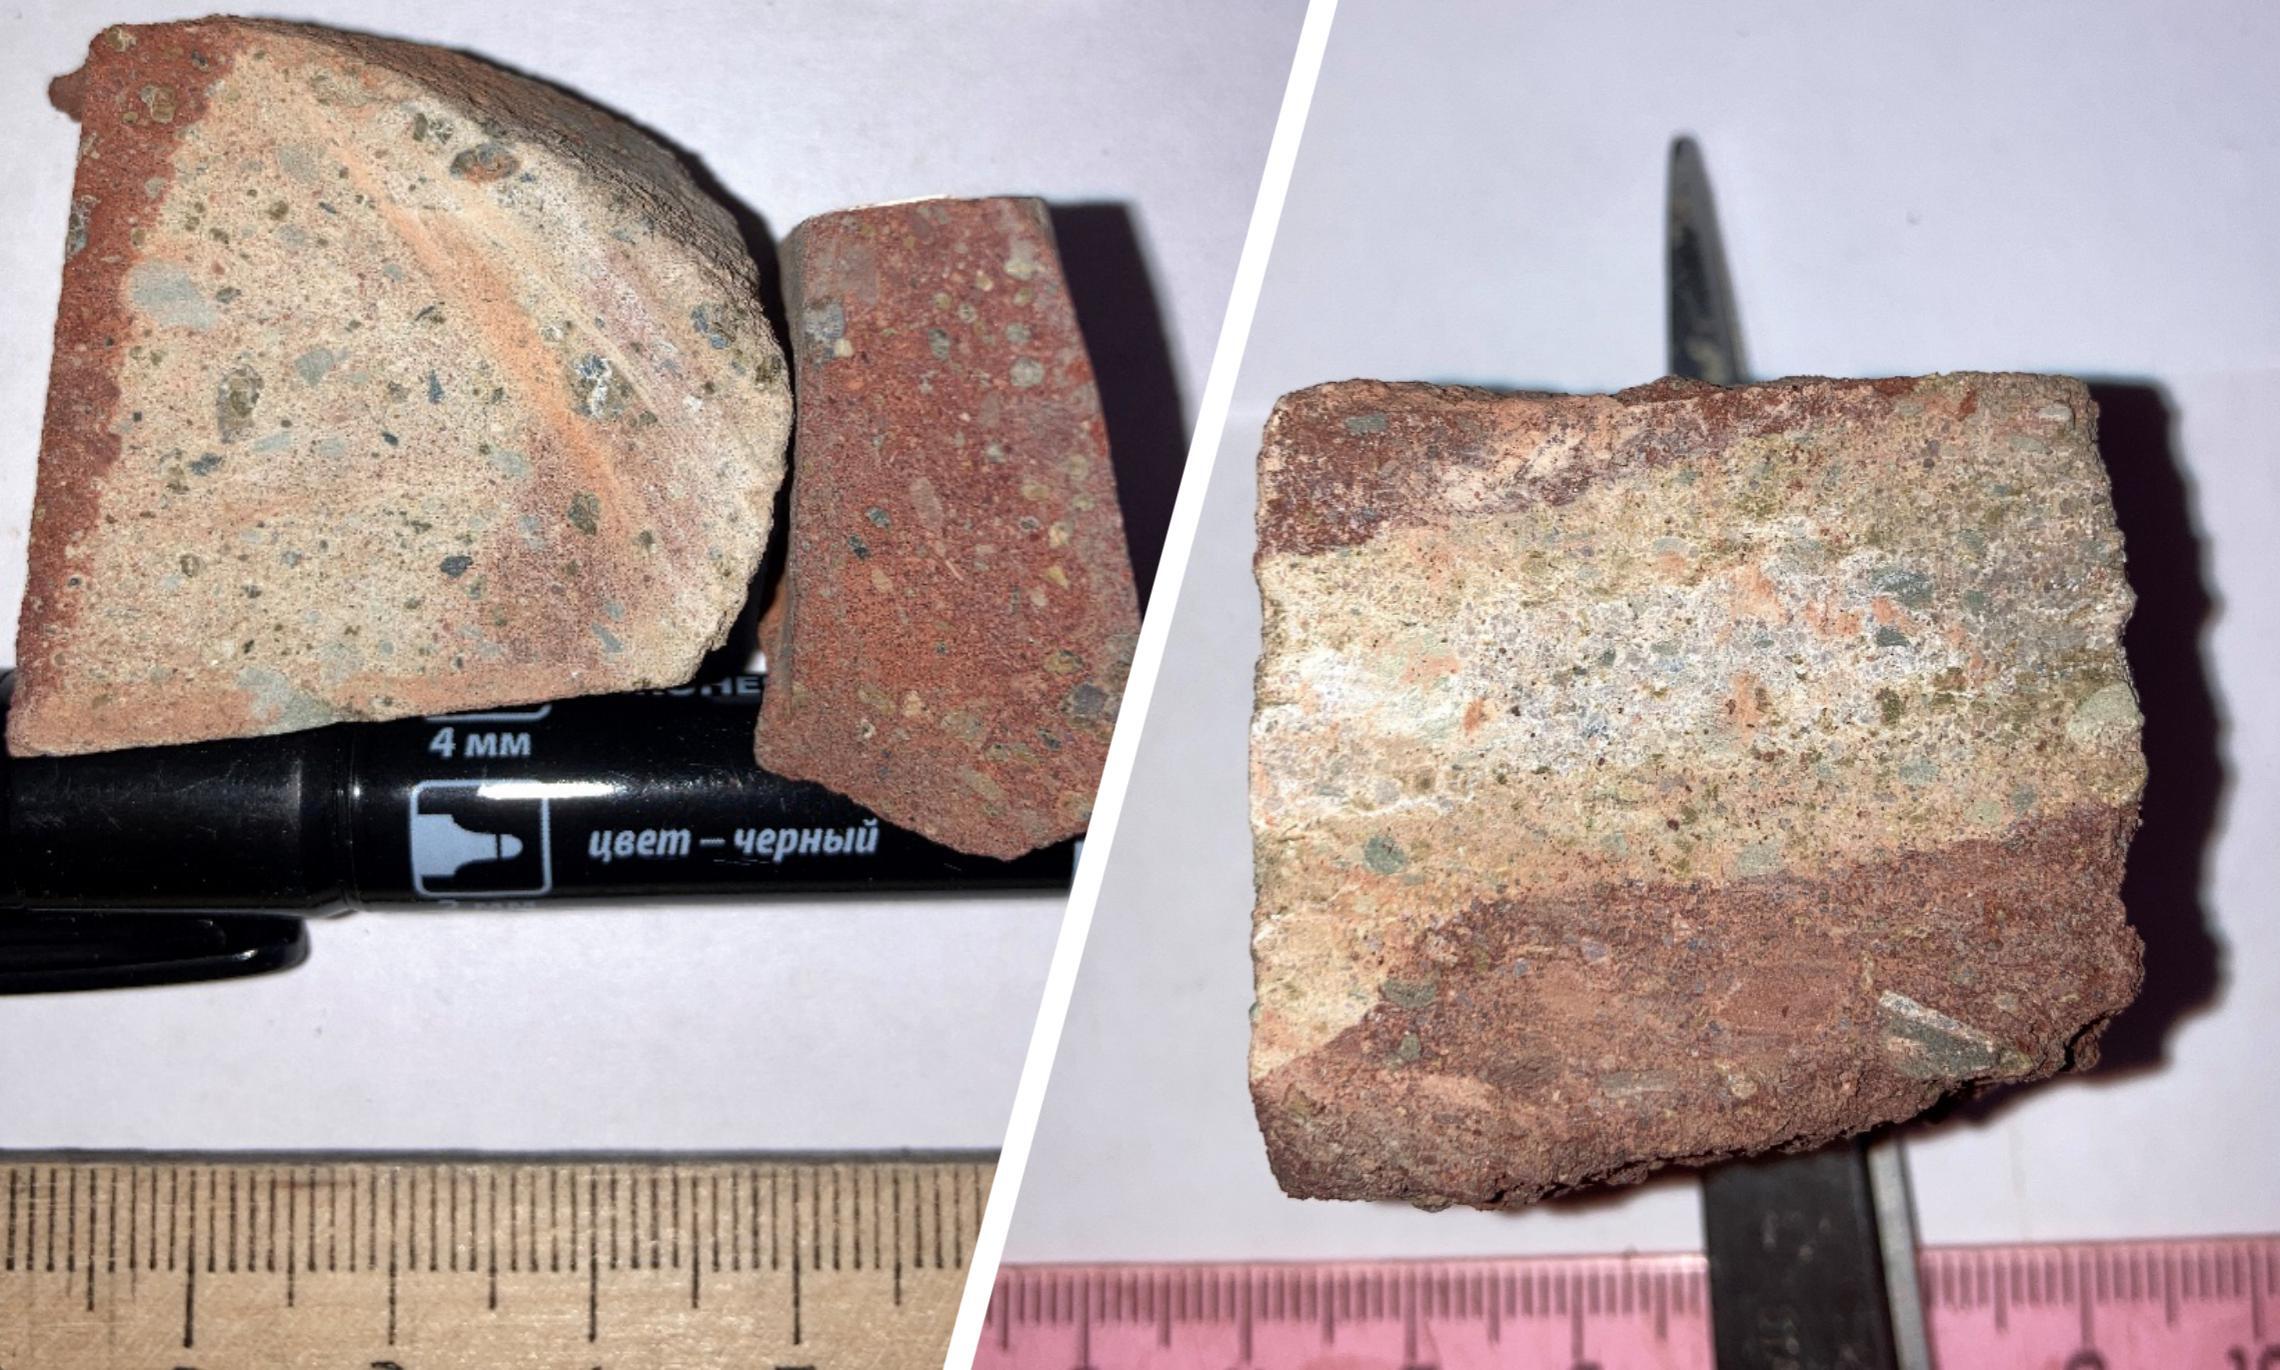 Слева на фото порода кратерной части не кимберлитовой трубки. А справа - кимберлитовой трубки. Визуально не отличить, но новый метод позволит определить,  где могут быть алмазы. 